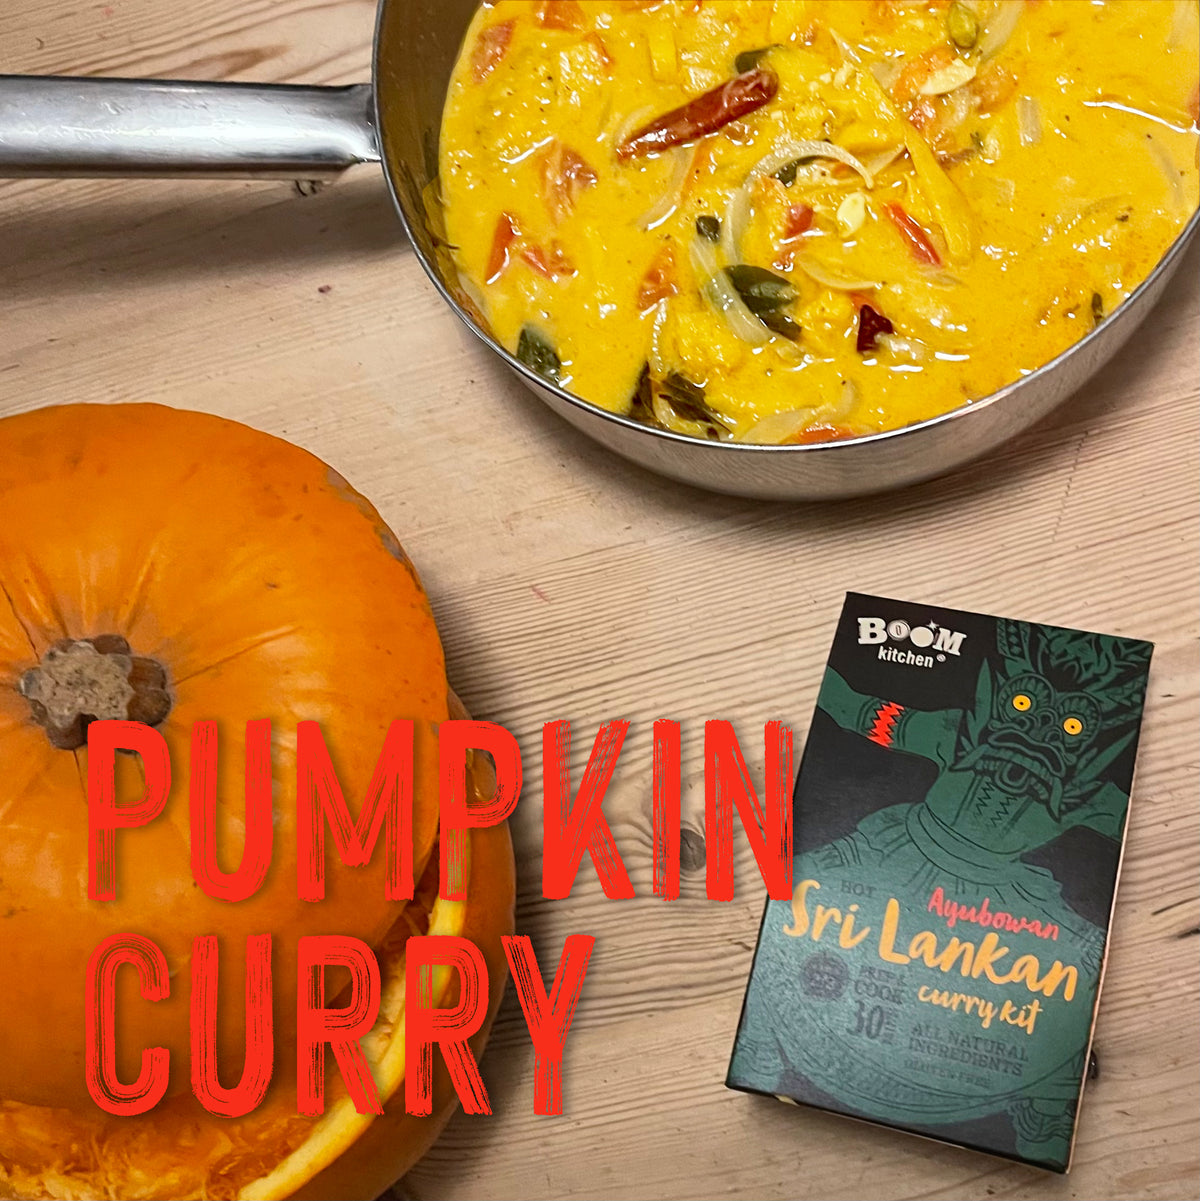 Pumpkin curry recipe